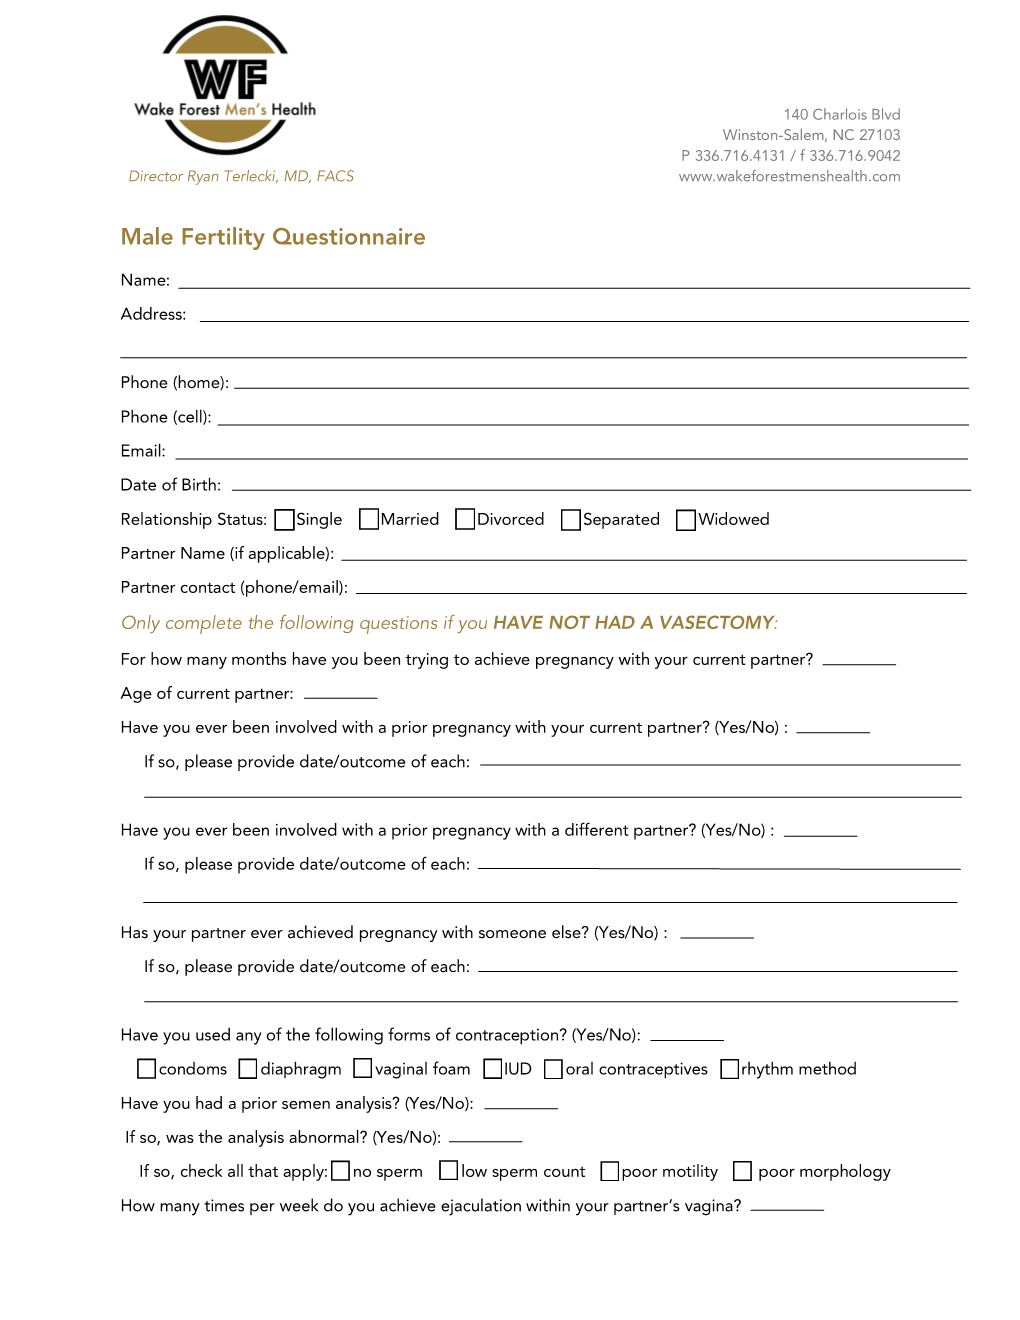 Male Fertility Questionnaire